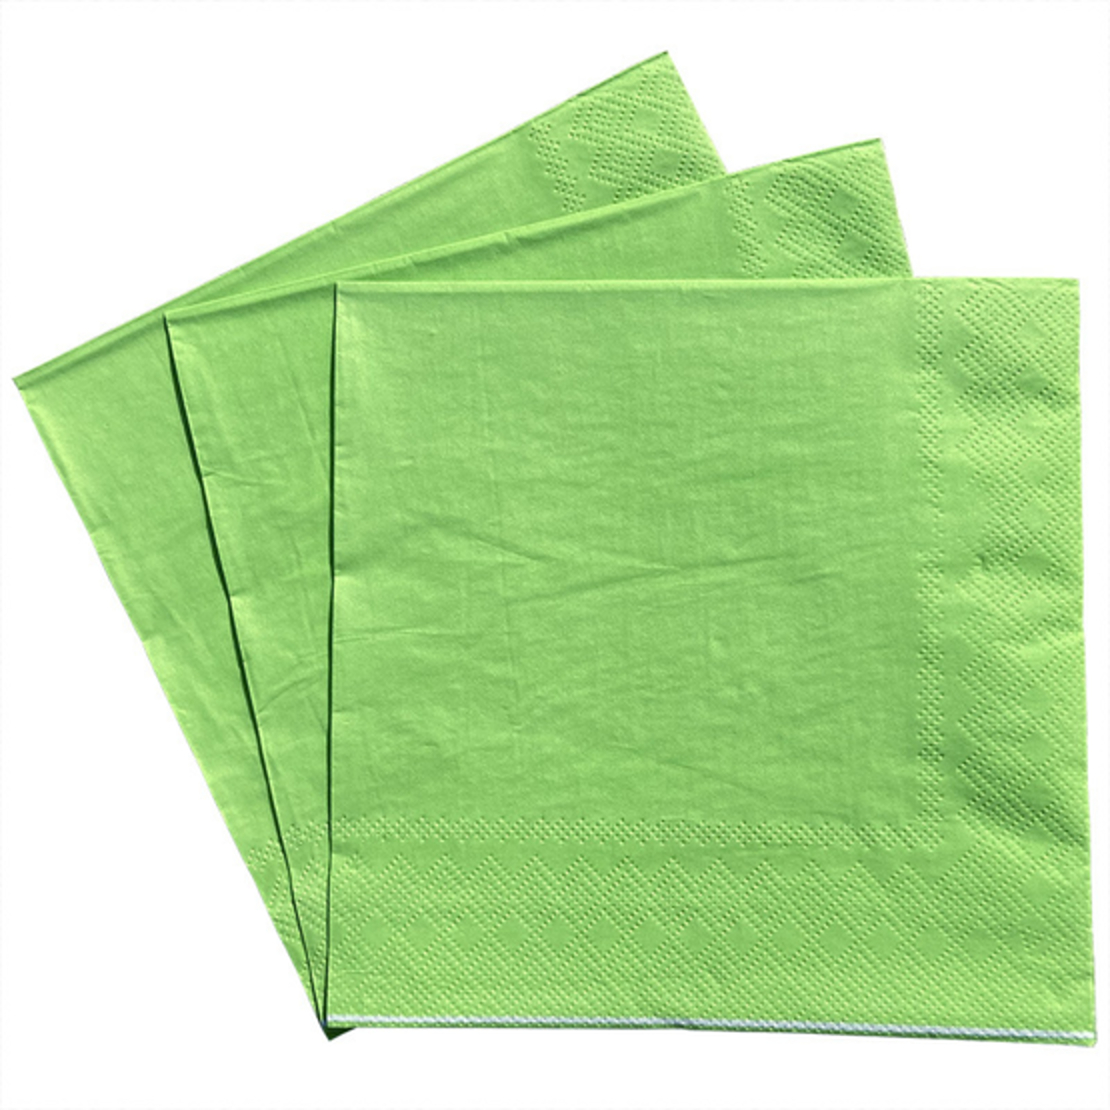 מפיות נייר חלקות צבע ירוק - 20 יחידות